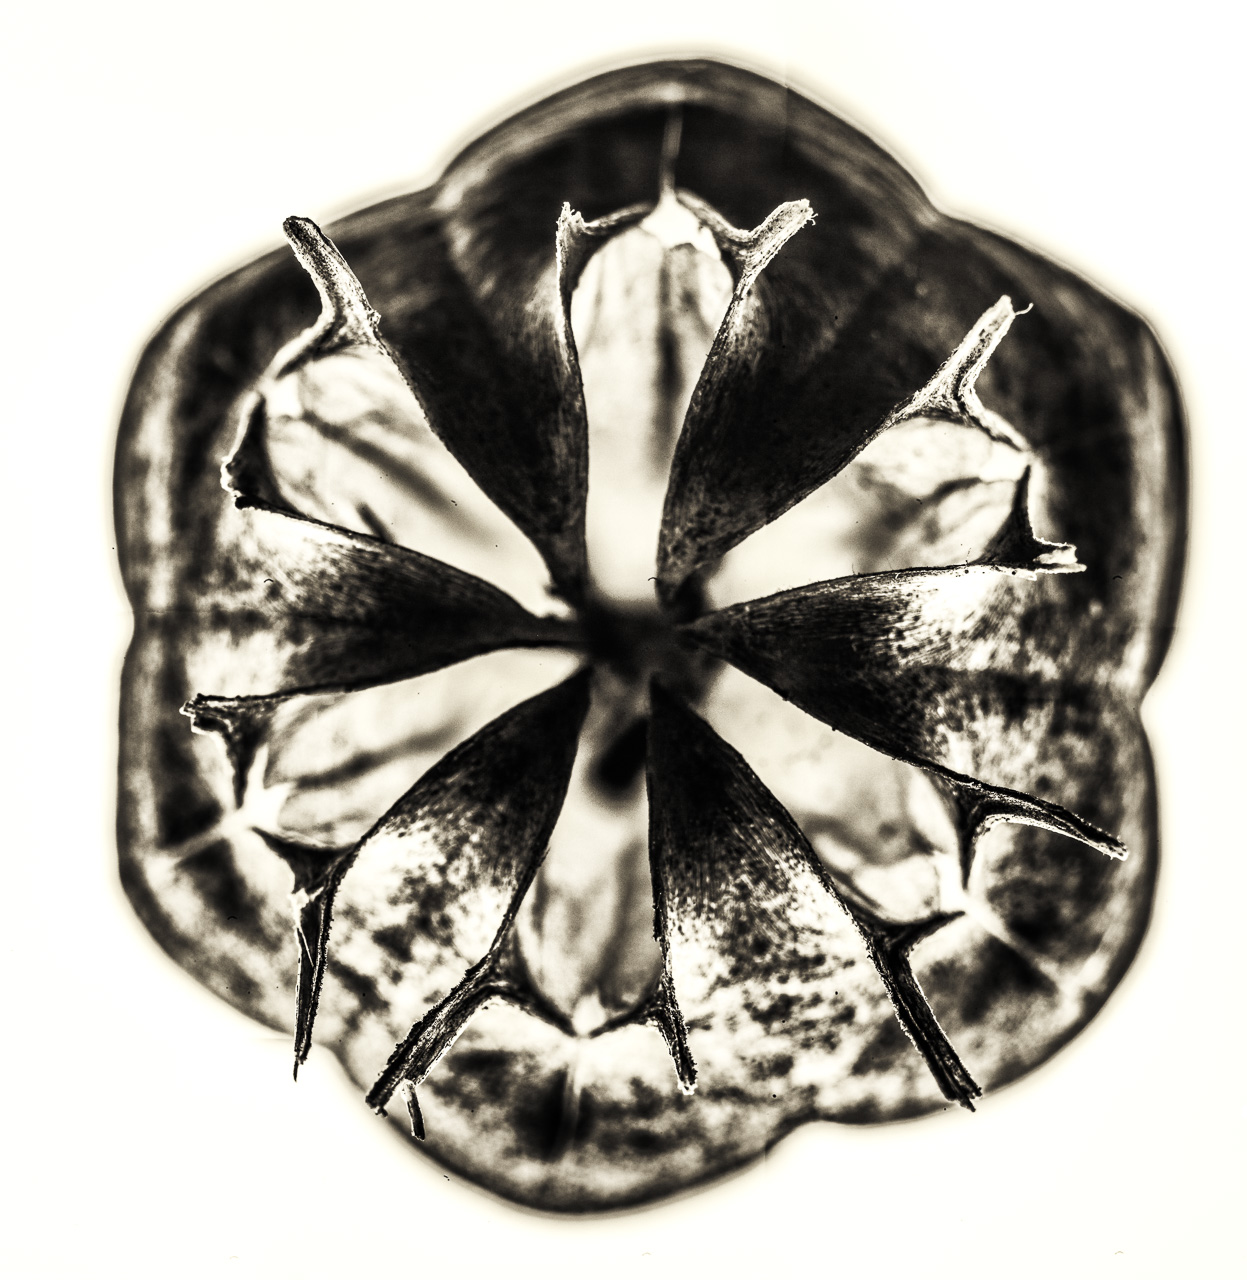 Eine SamenKapsel einer Nigella damascena in FrontalAnsicht. Die sechs symmetrischen BlütenAnsätze sind scharf, der Rest verschwimmt.